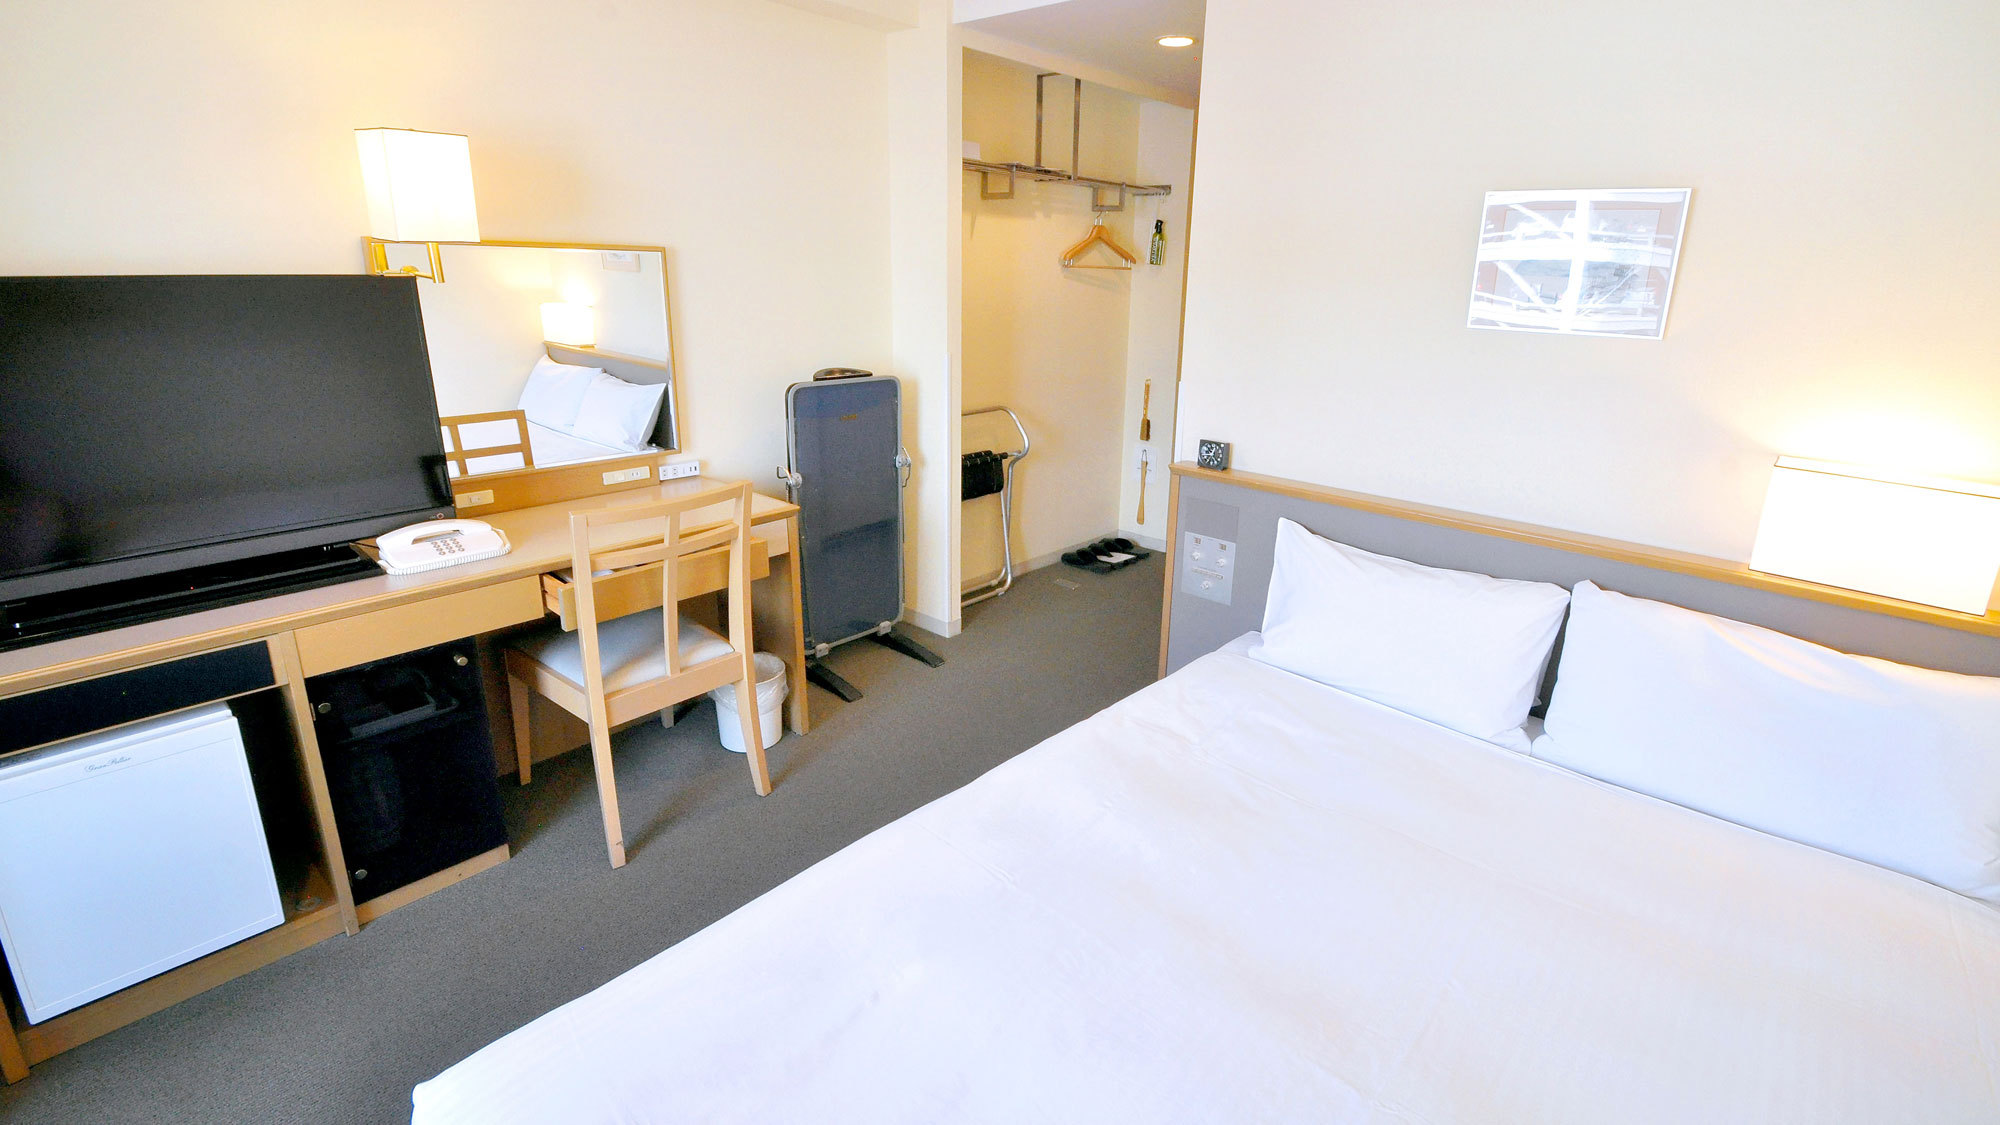 【セミダブル】シングルルームと同形式のお部屋が、2名様でもご利用可能なリーズナブルな客室です。